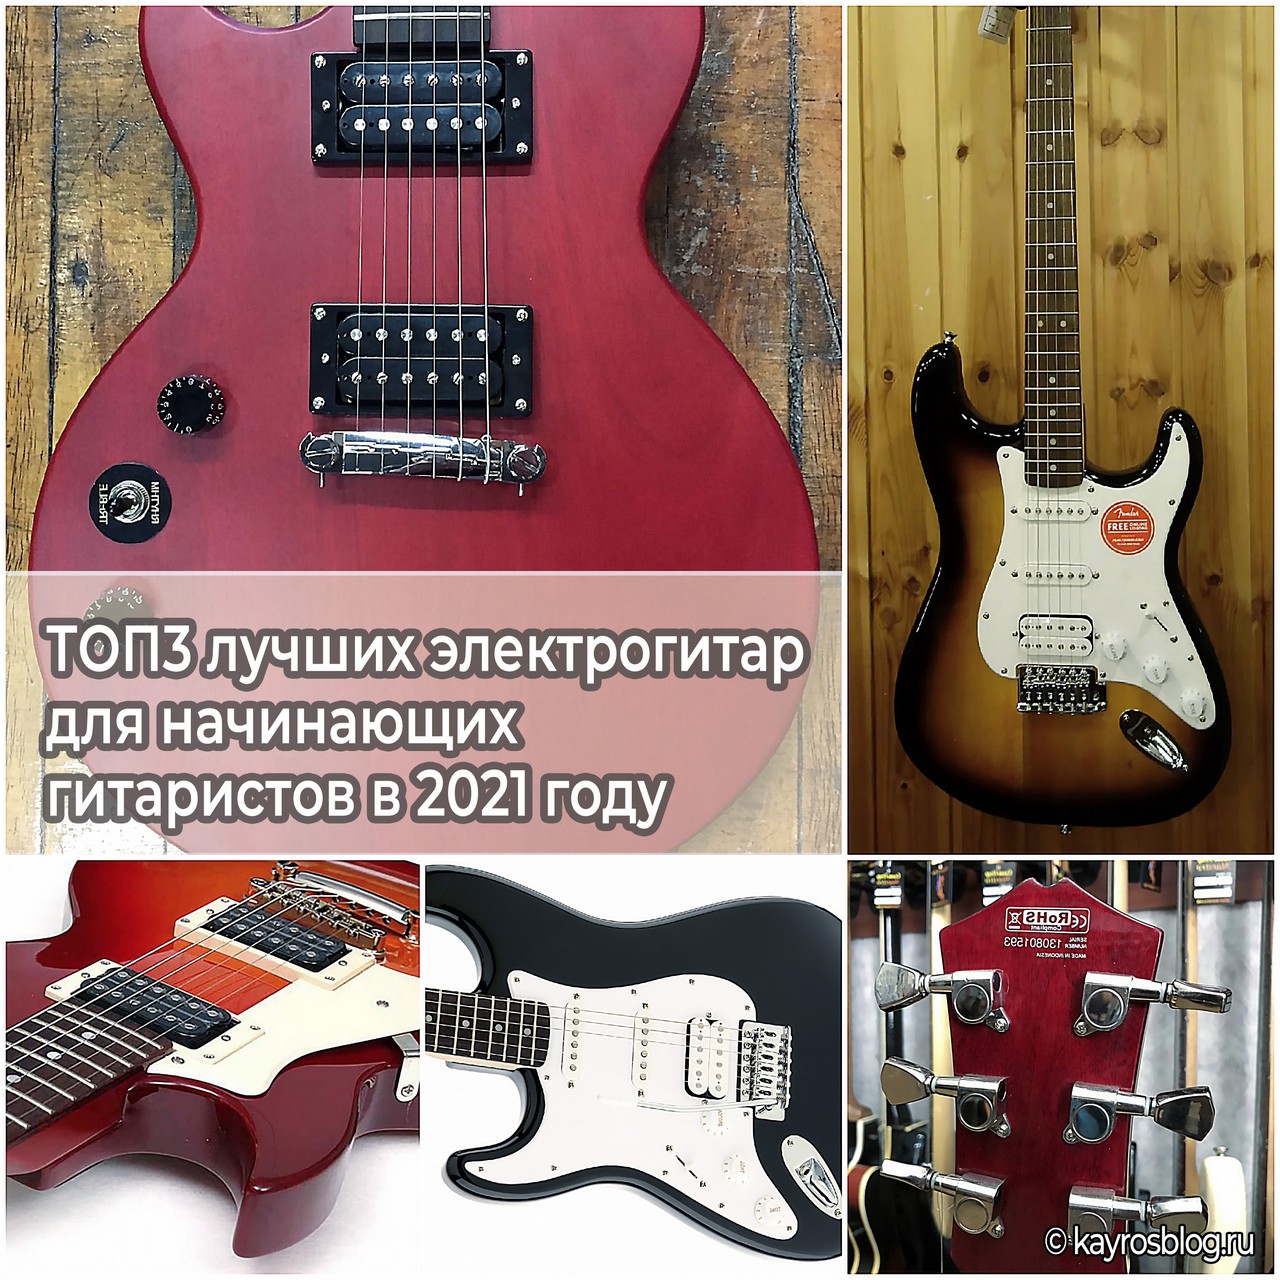 ТОП3 лучших электрогитар для начинающих гитаристов в 2021 году